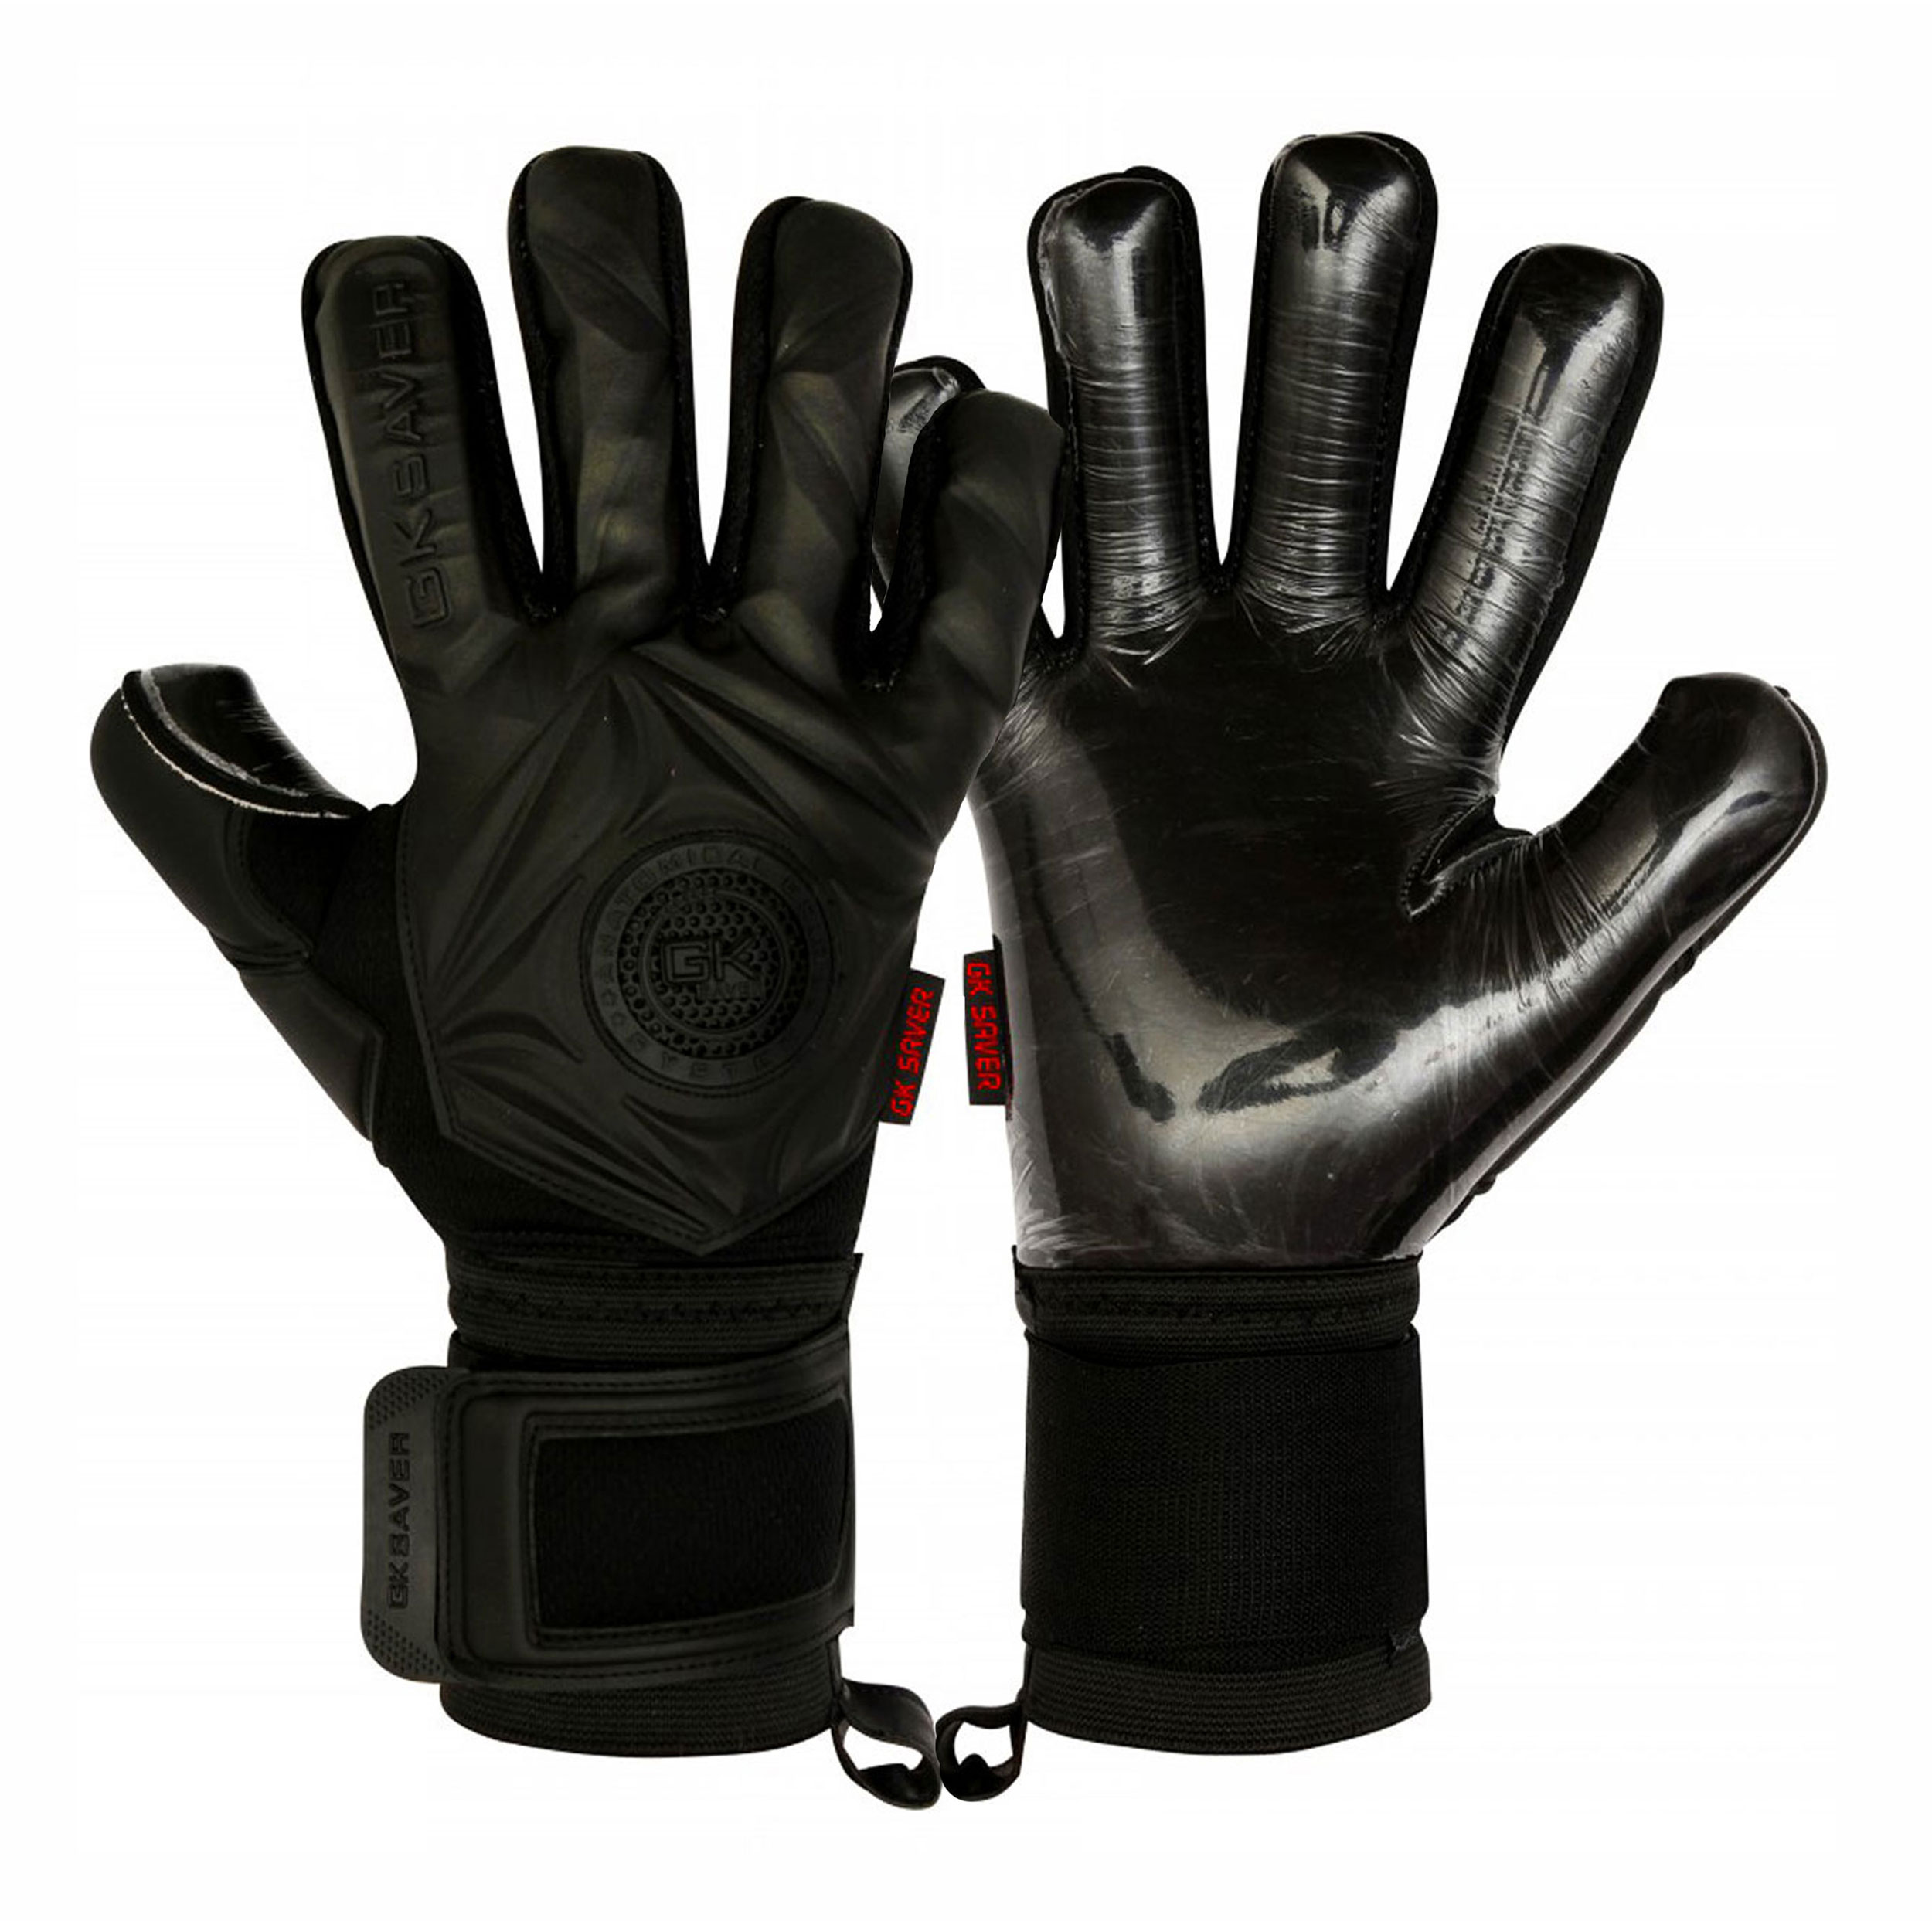 Gk Saver Prime Pro Black/Green Football Goalkeeper Gloves 